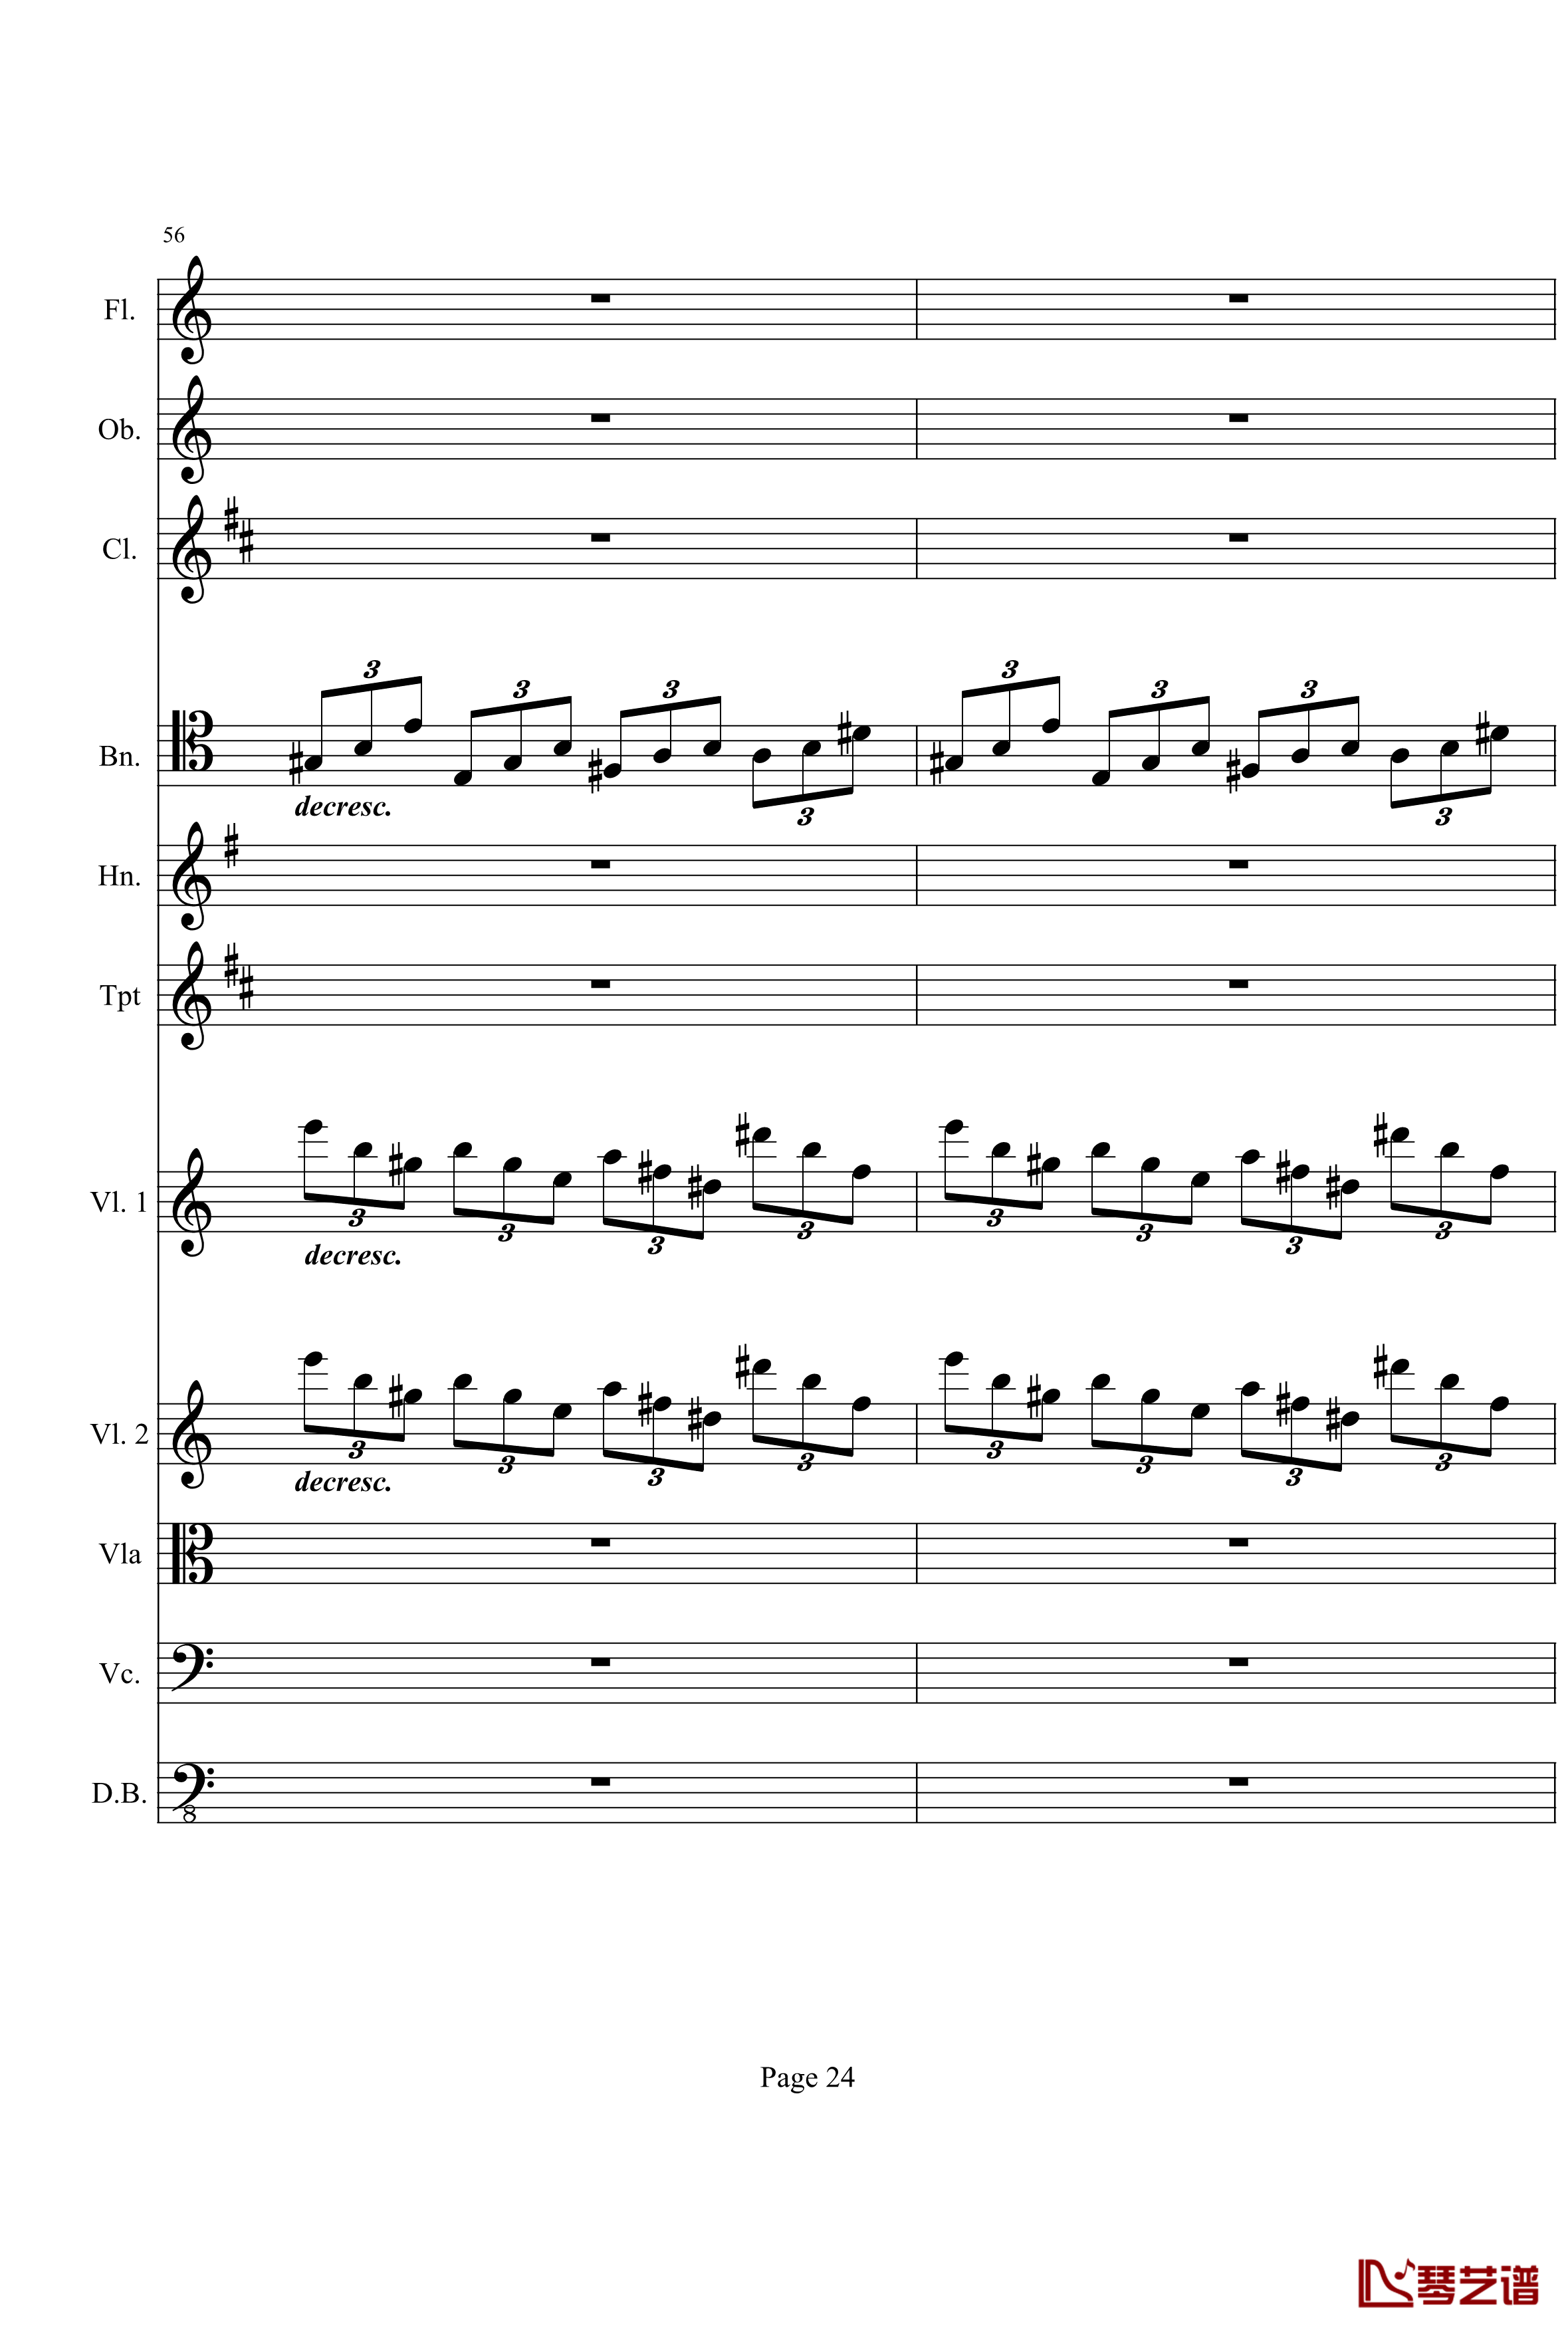 奏鸣曲之交响钢琴谱-第21-Ⅰ-贝多芬-beethoven24